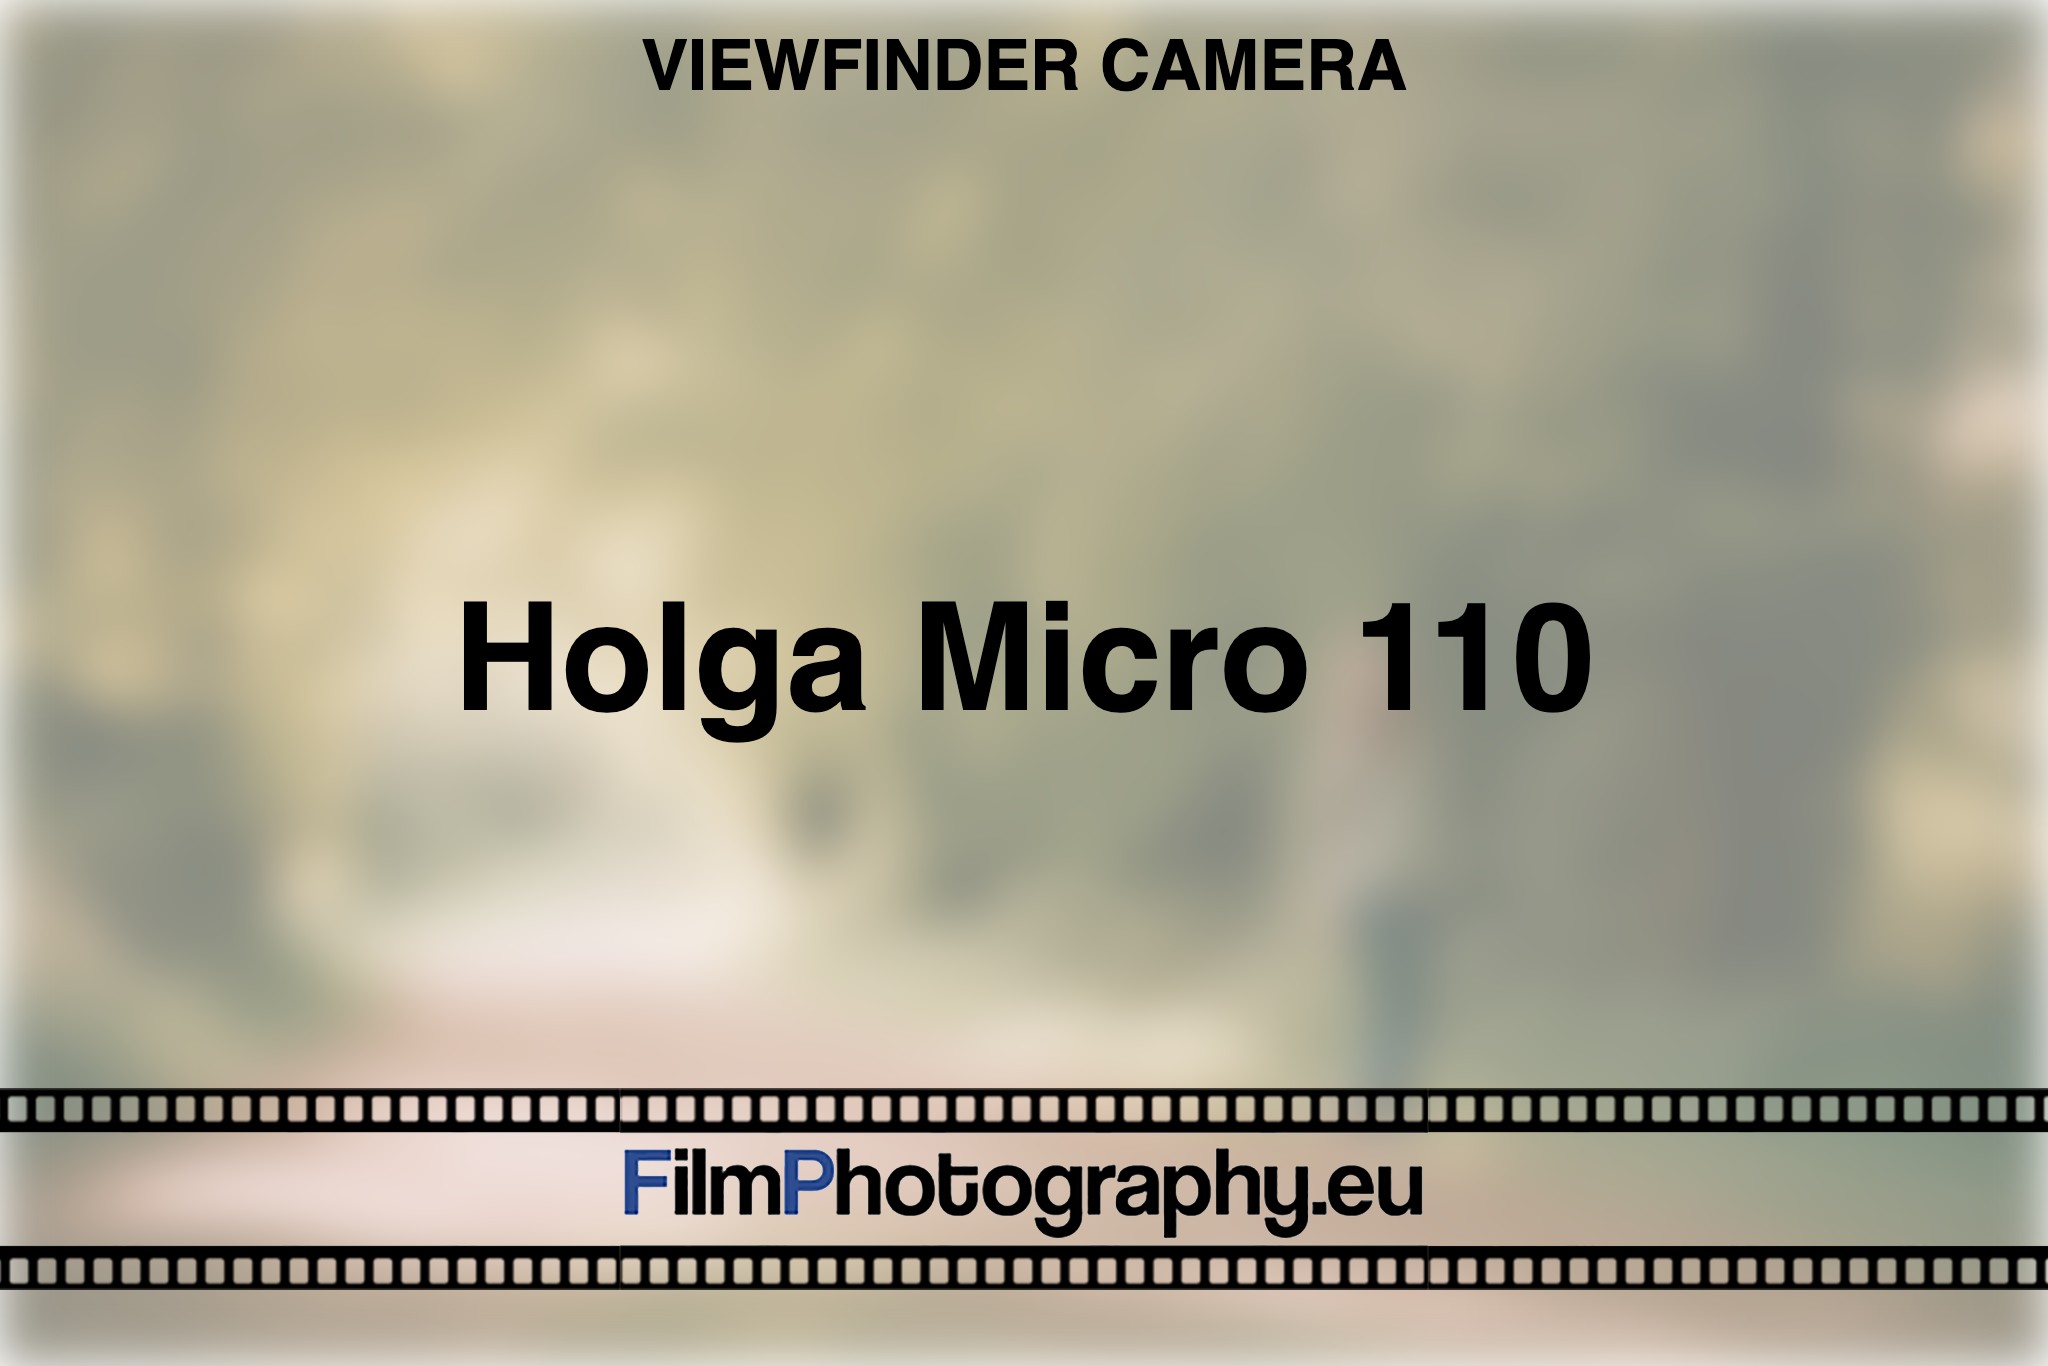 holga-micro-110-viewfinder-camera-bnv